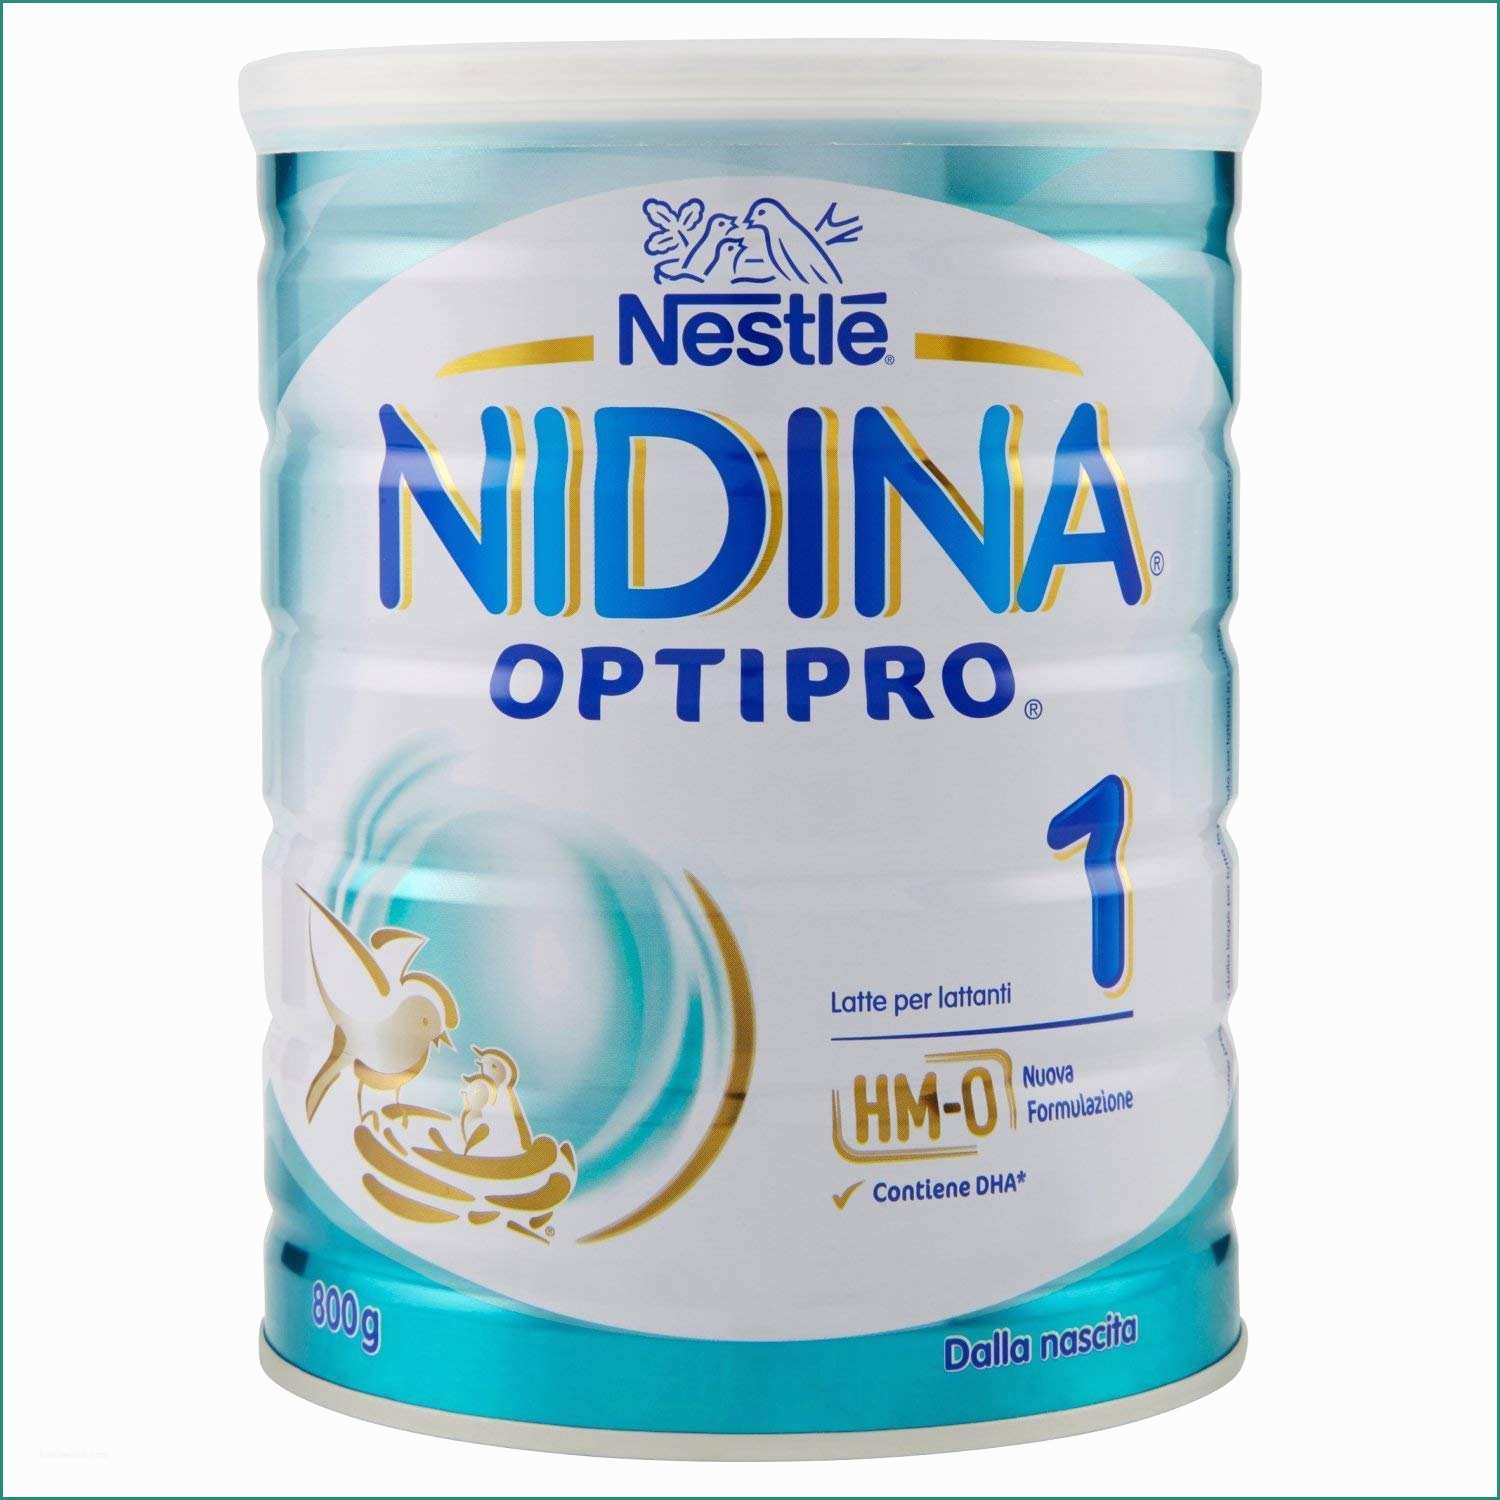 Catalogo Premi Esselunga E Nestlé Nidina 1 Optipro Dalla Nascita Latte Per Lattanti In Polvere